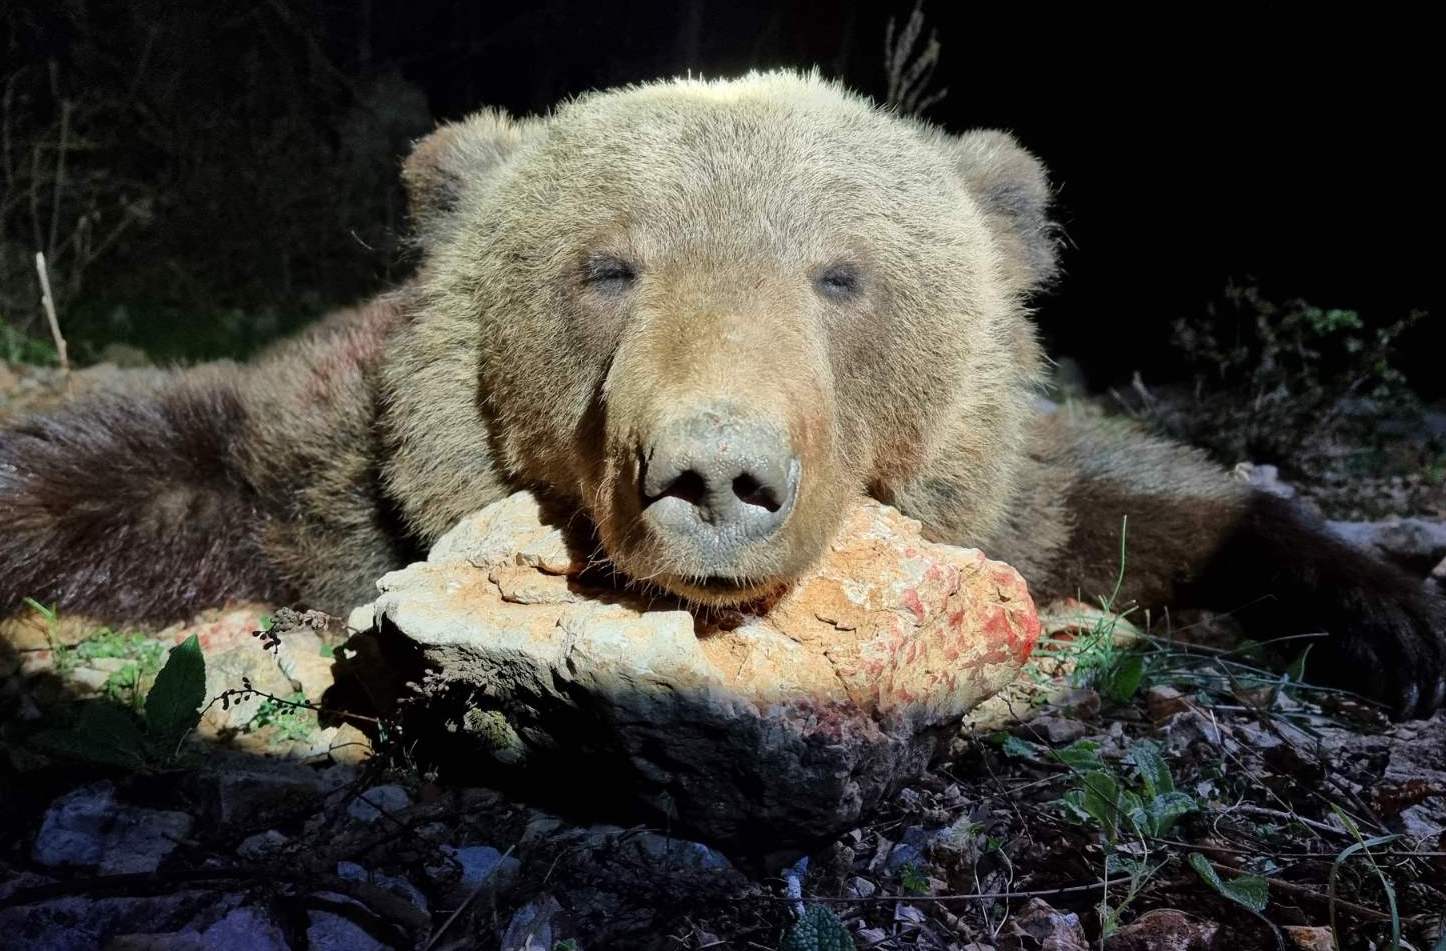 Medvevadászatok Szlovéniában és Horvátországban